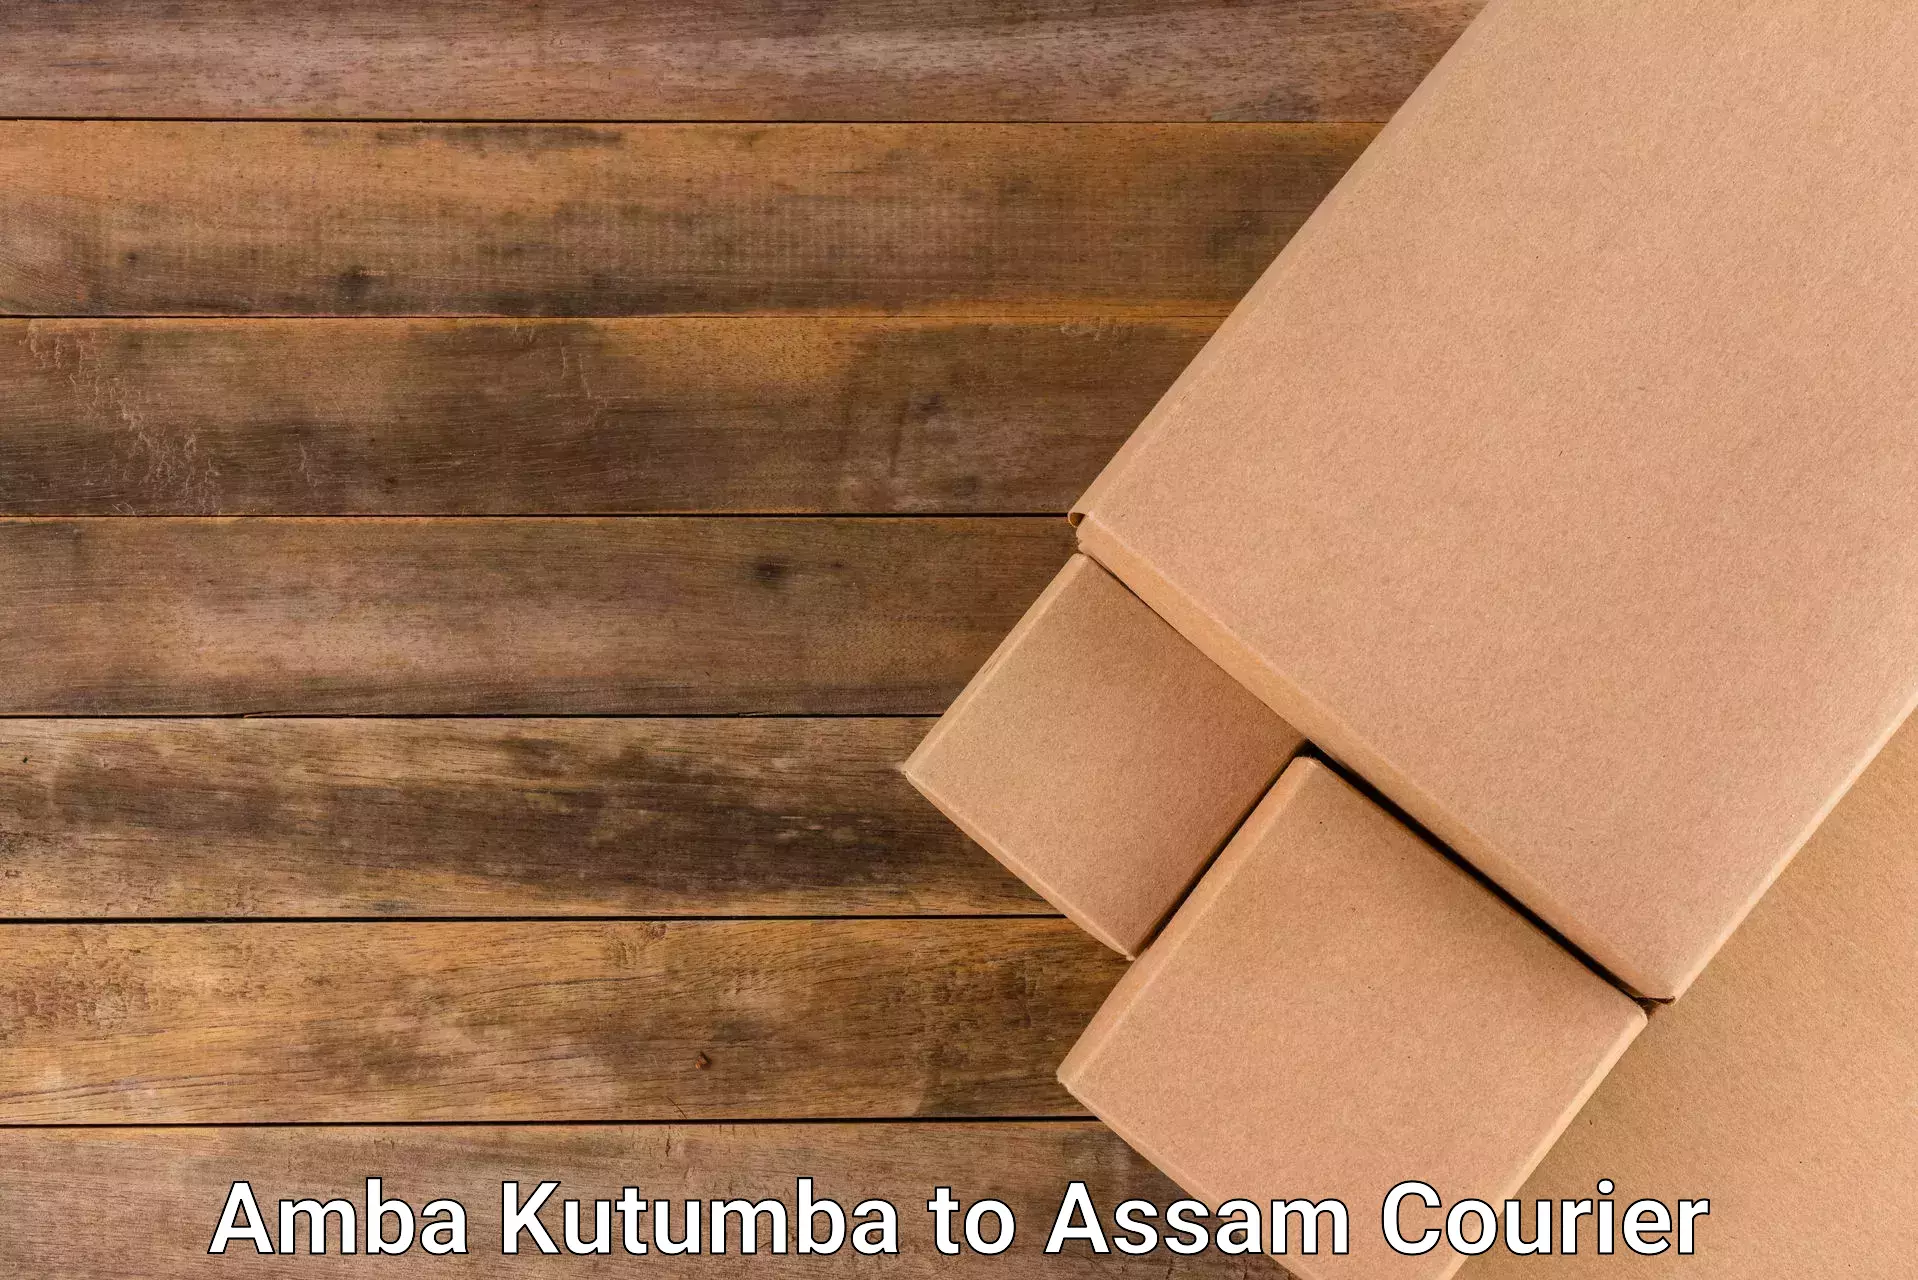 Efficient parcel tracking Amba Kutumba to Udharbond